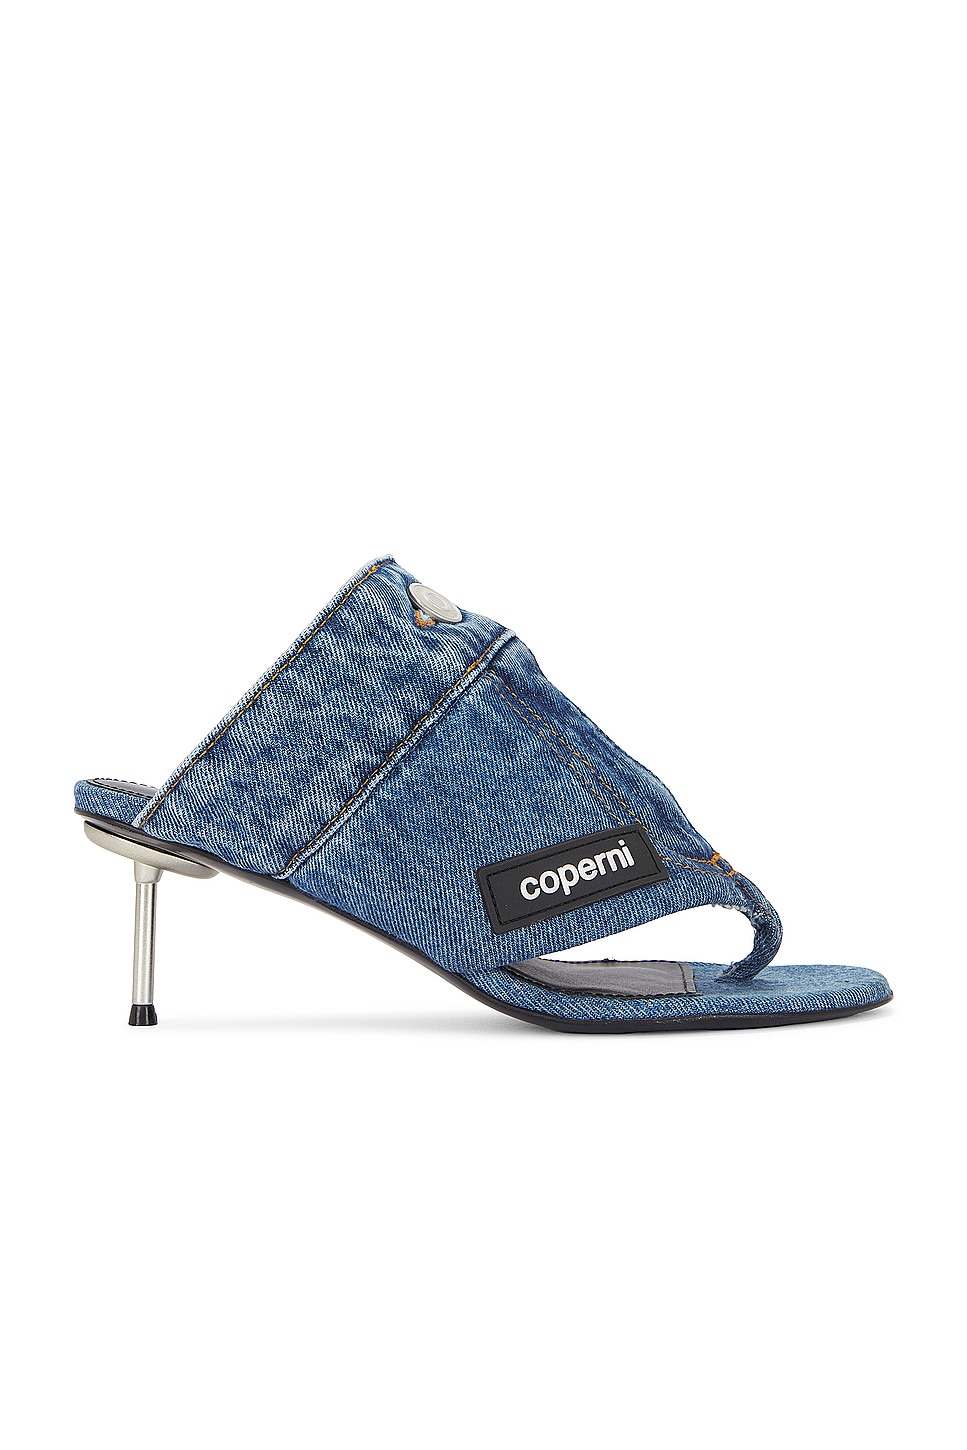 Image 1 of Coperni Denim Open Thong Sandal in Washed Blue